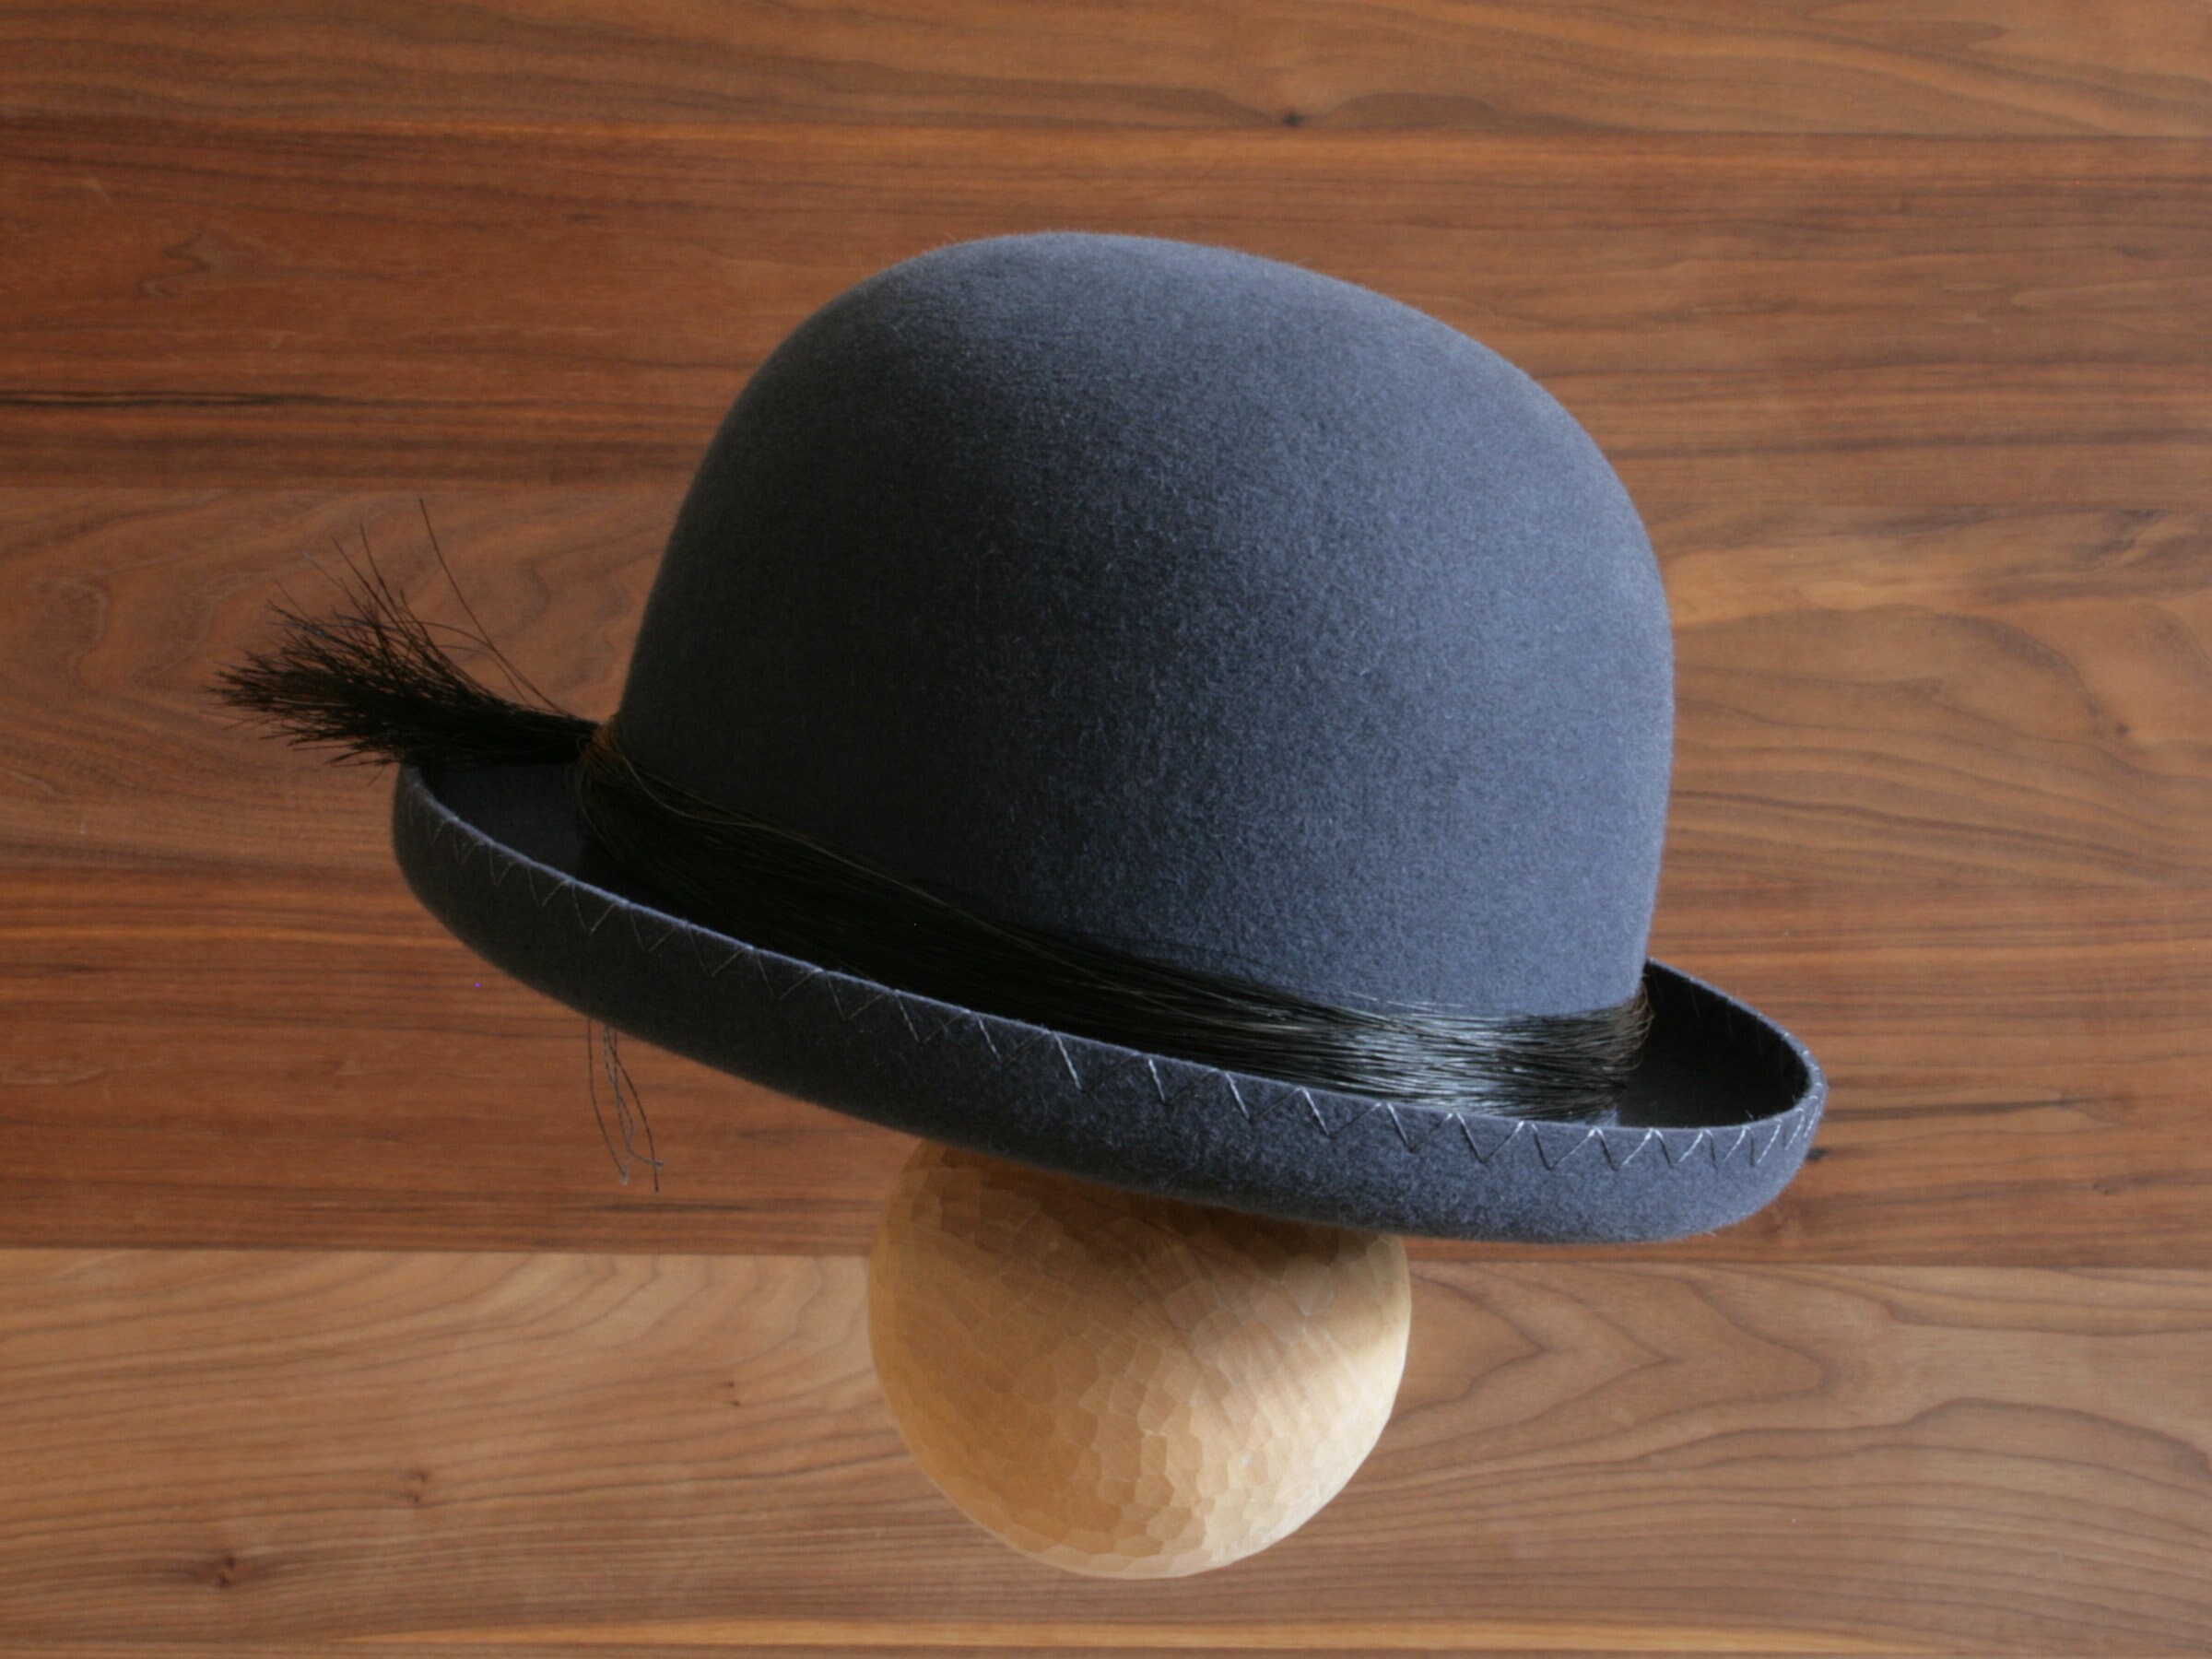 exquisitamente cosido forma única alta calidad unisex bombín de inspiración boliviana YOBOLA inca Accesorios Sombreros y gorras Sombreros de vestir Gorras de bolera hecho a mano en Bristol Inglaterra 